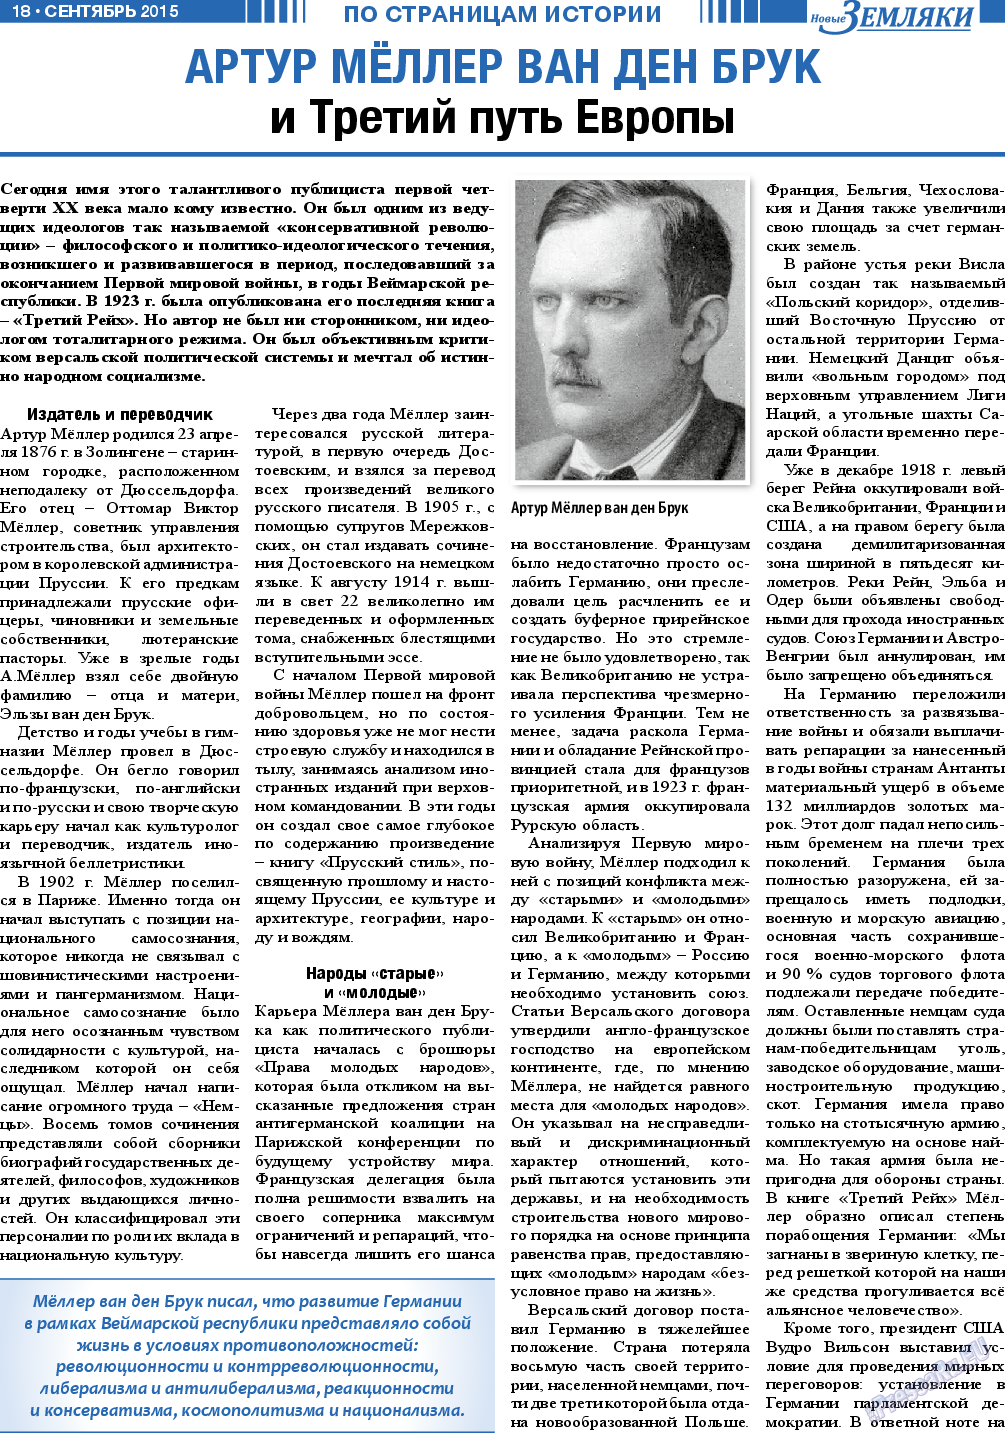 Новые Земляки, газета. 2015 №9 стр.18